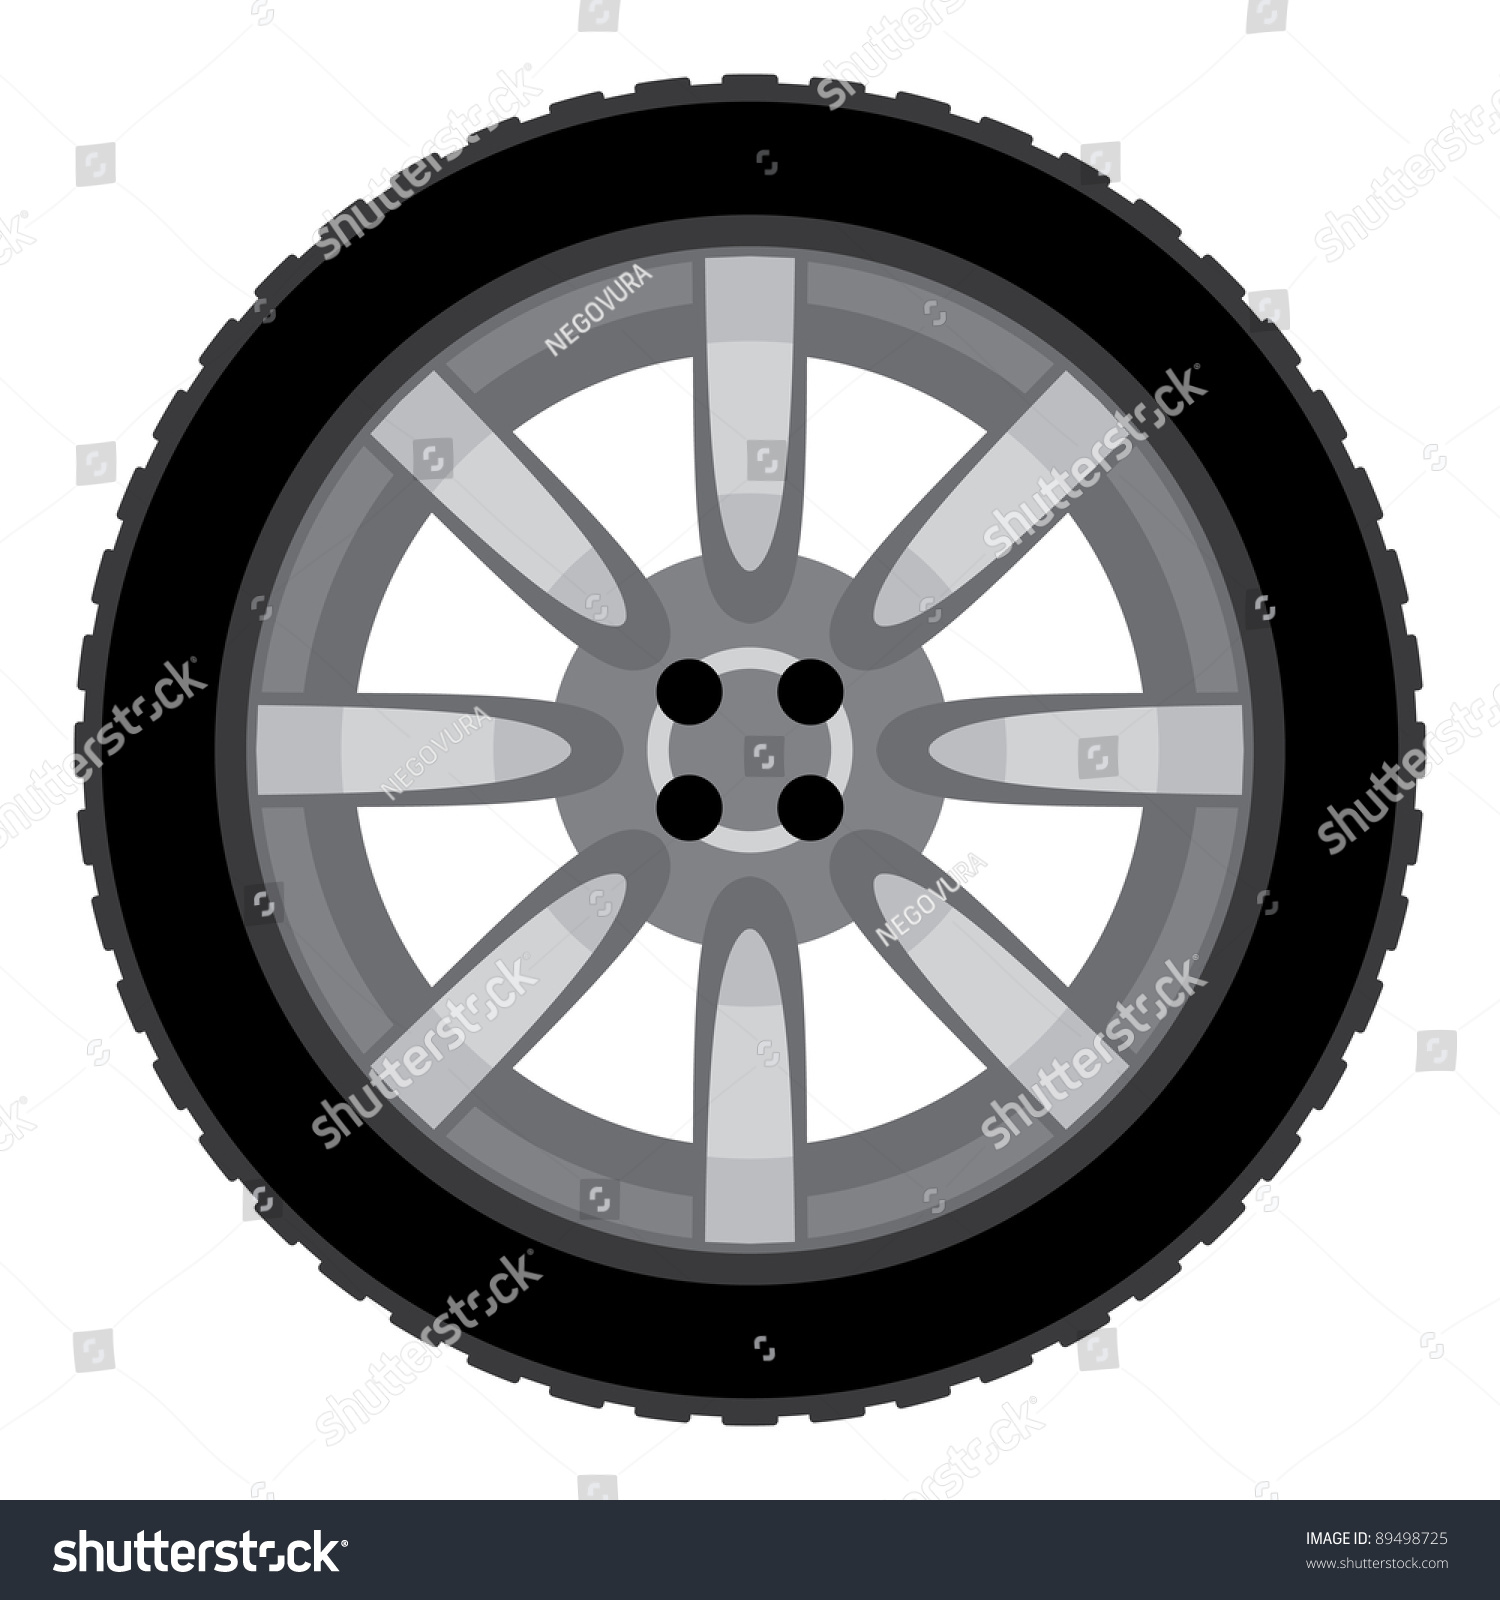 Car Wheel Vector Illustration - 89498725 : Shutterstock